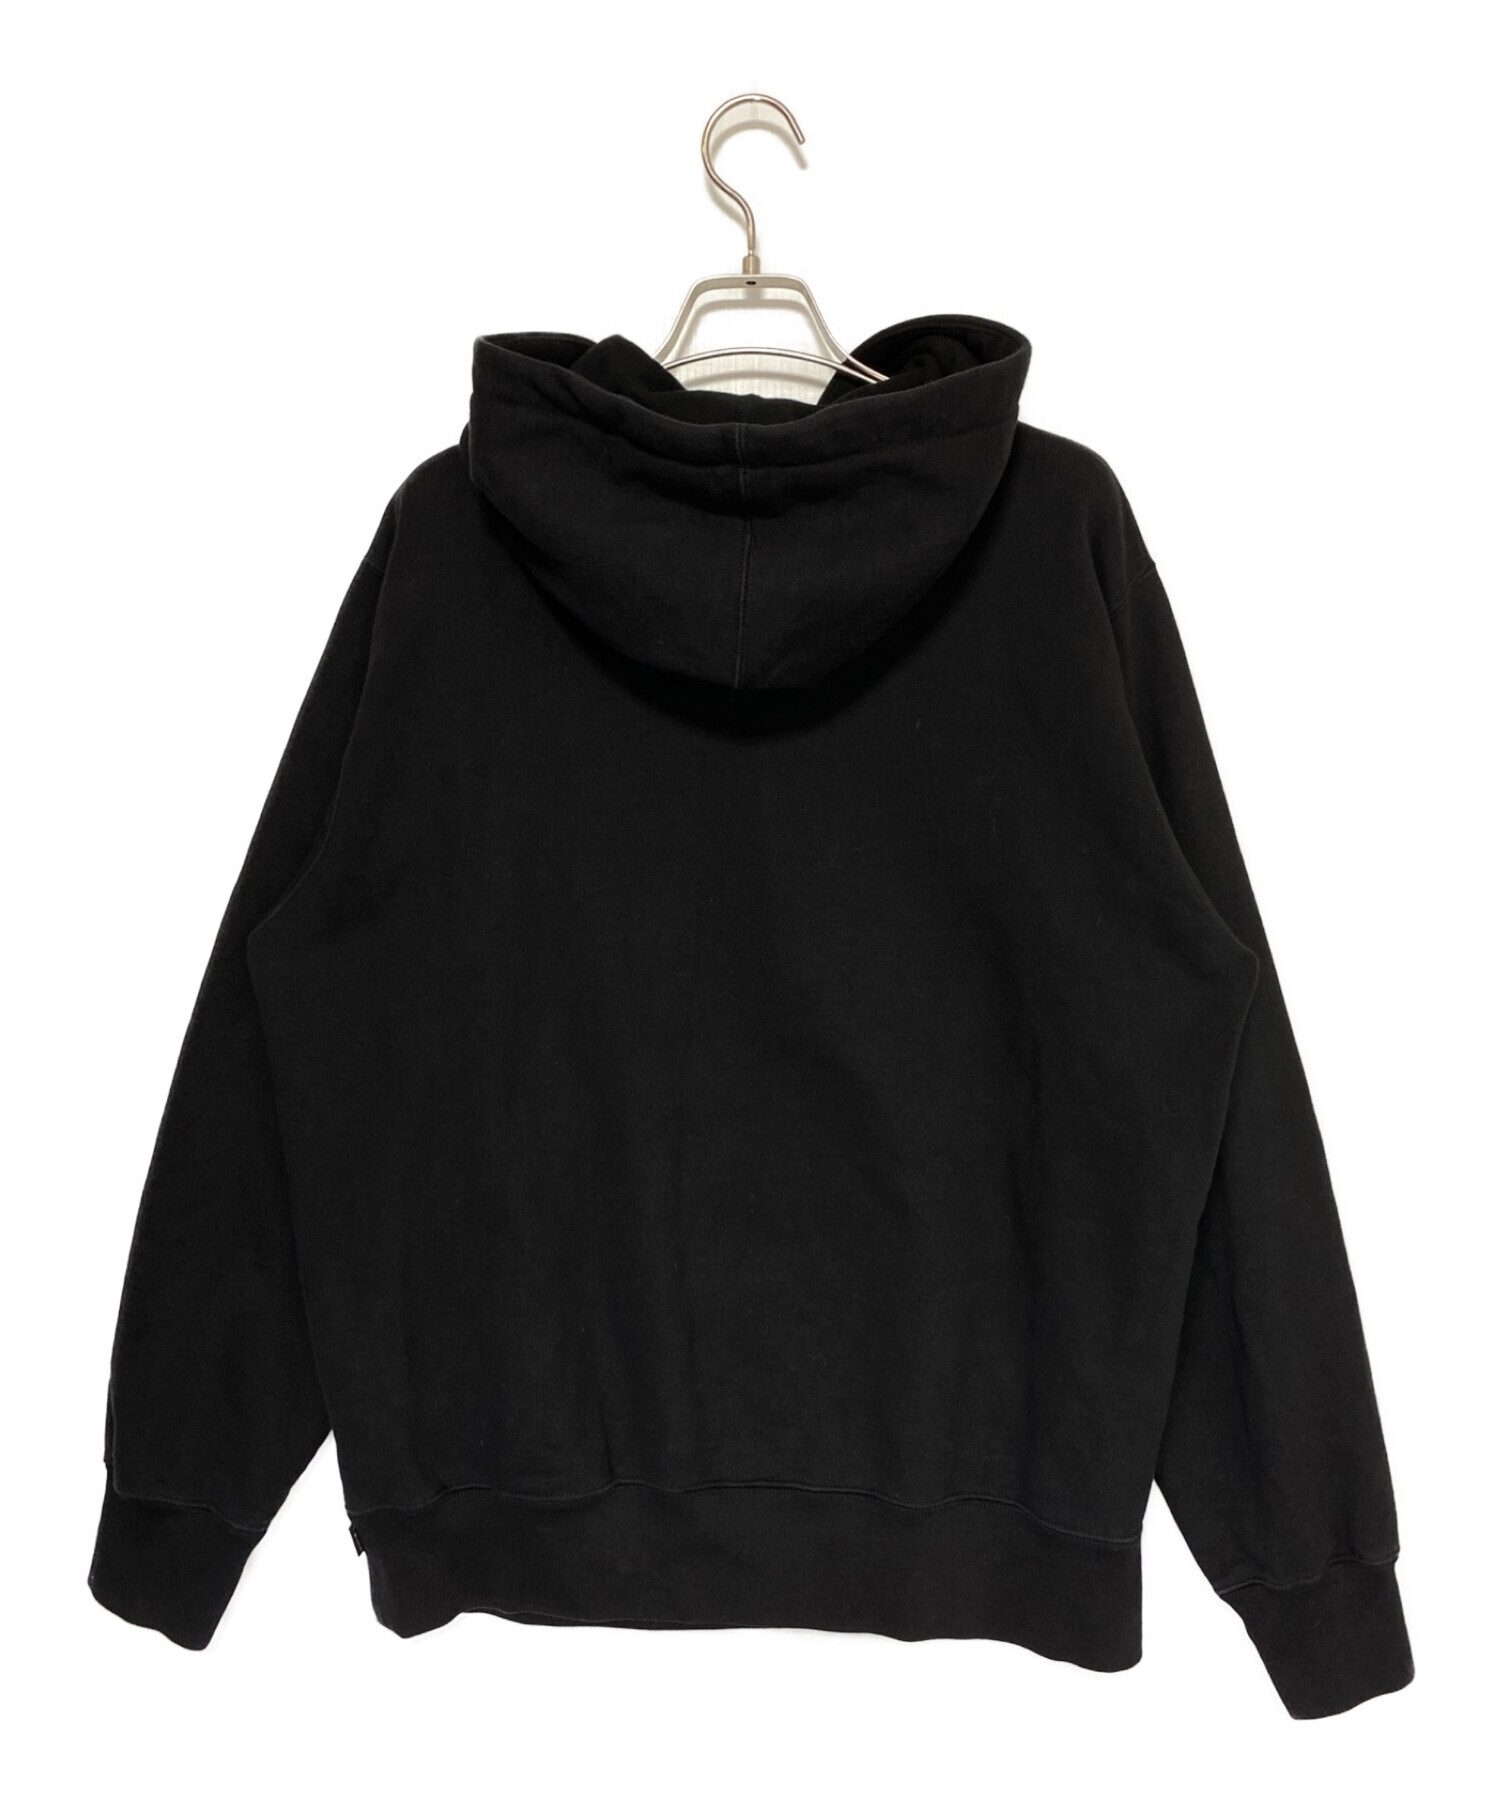 24,499円Supreme Chainstitch Hooded Sweatshirt S